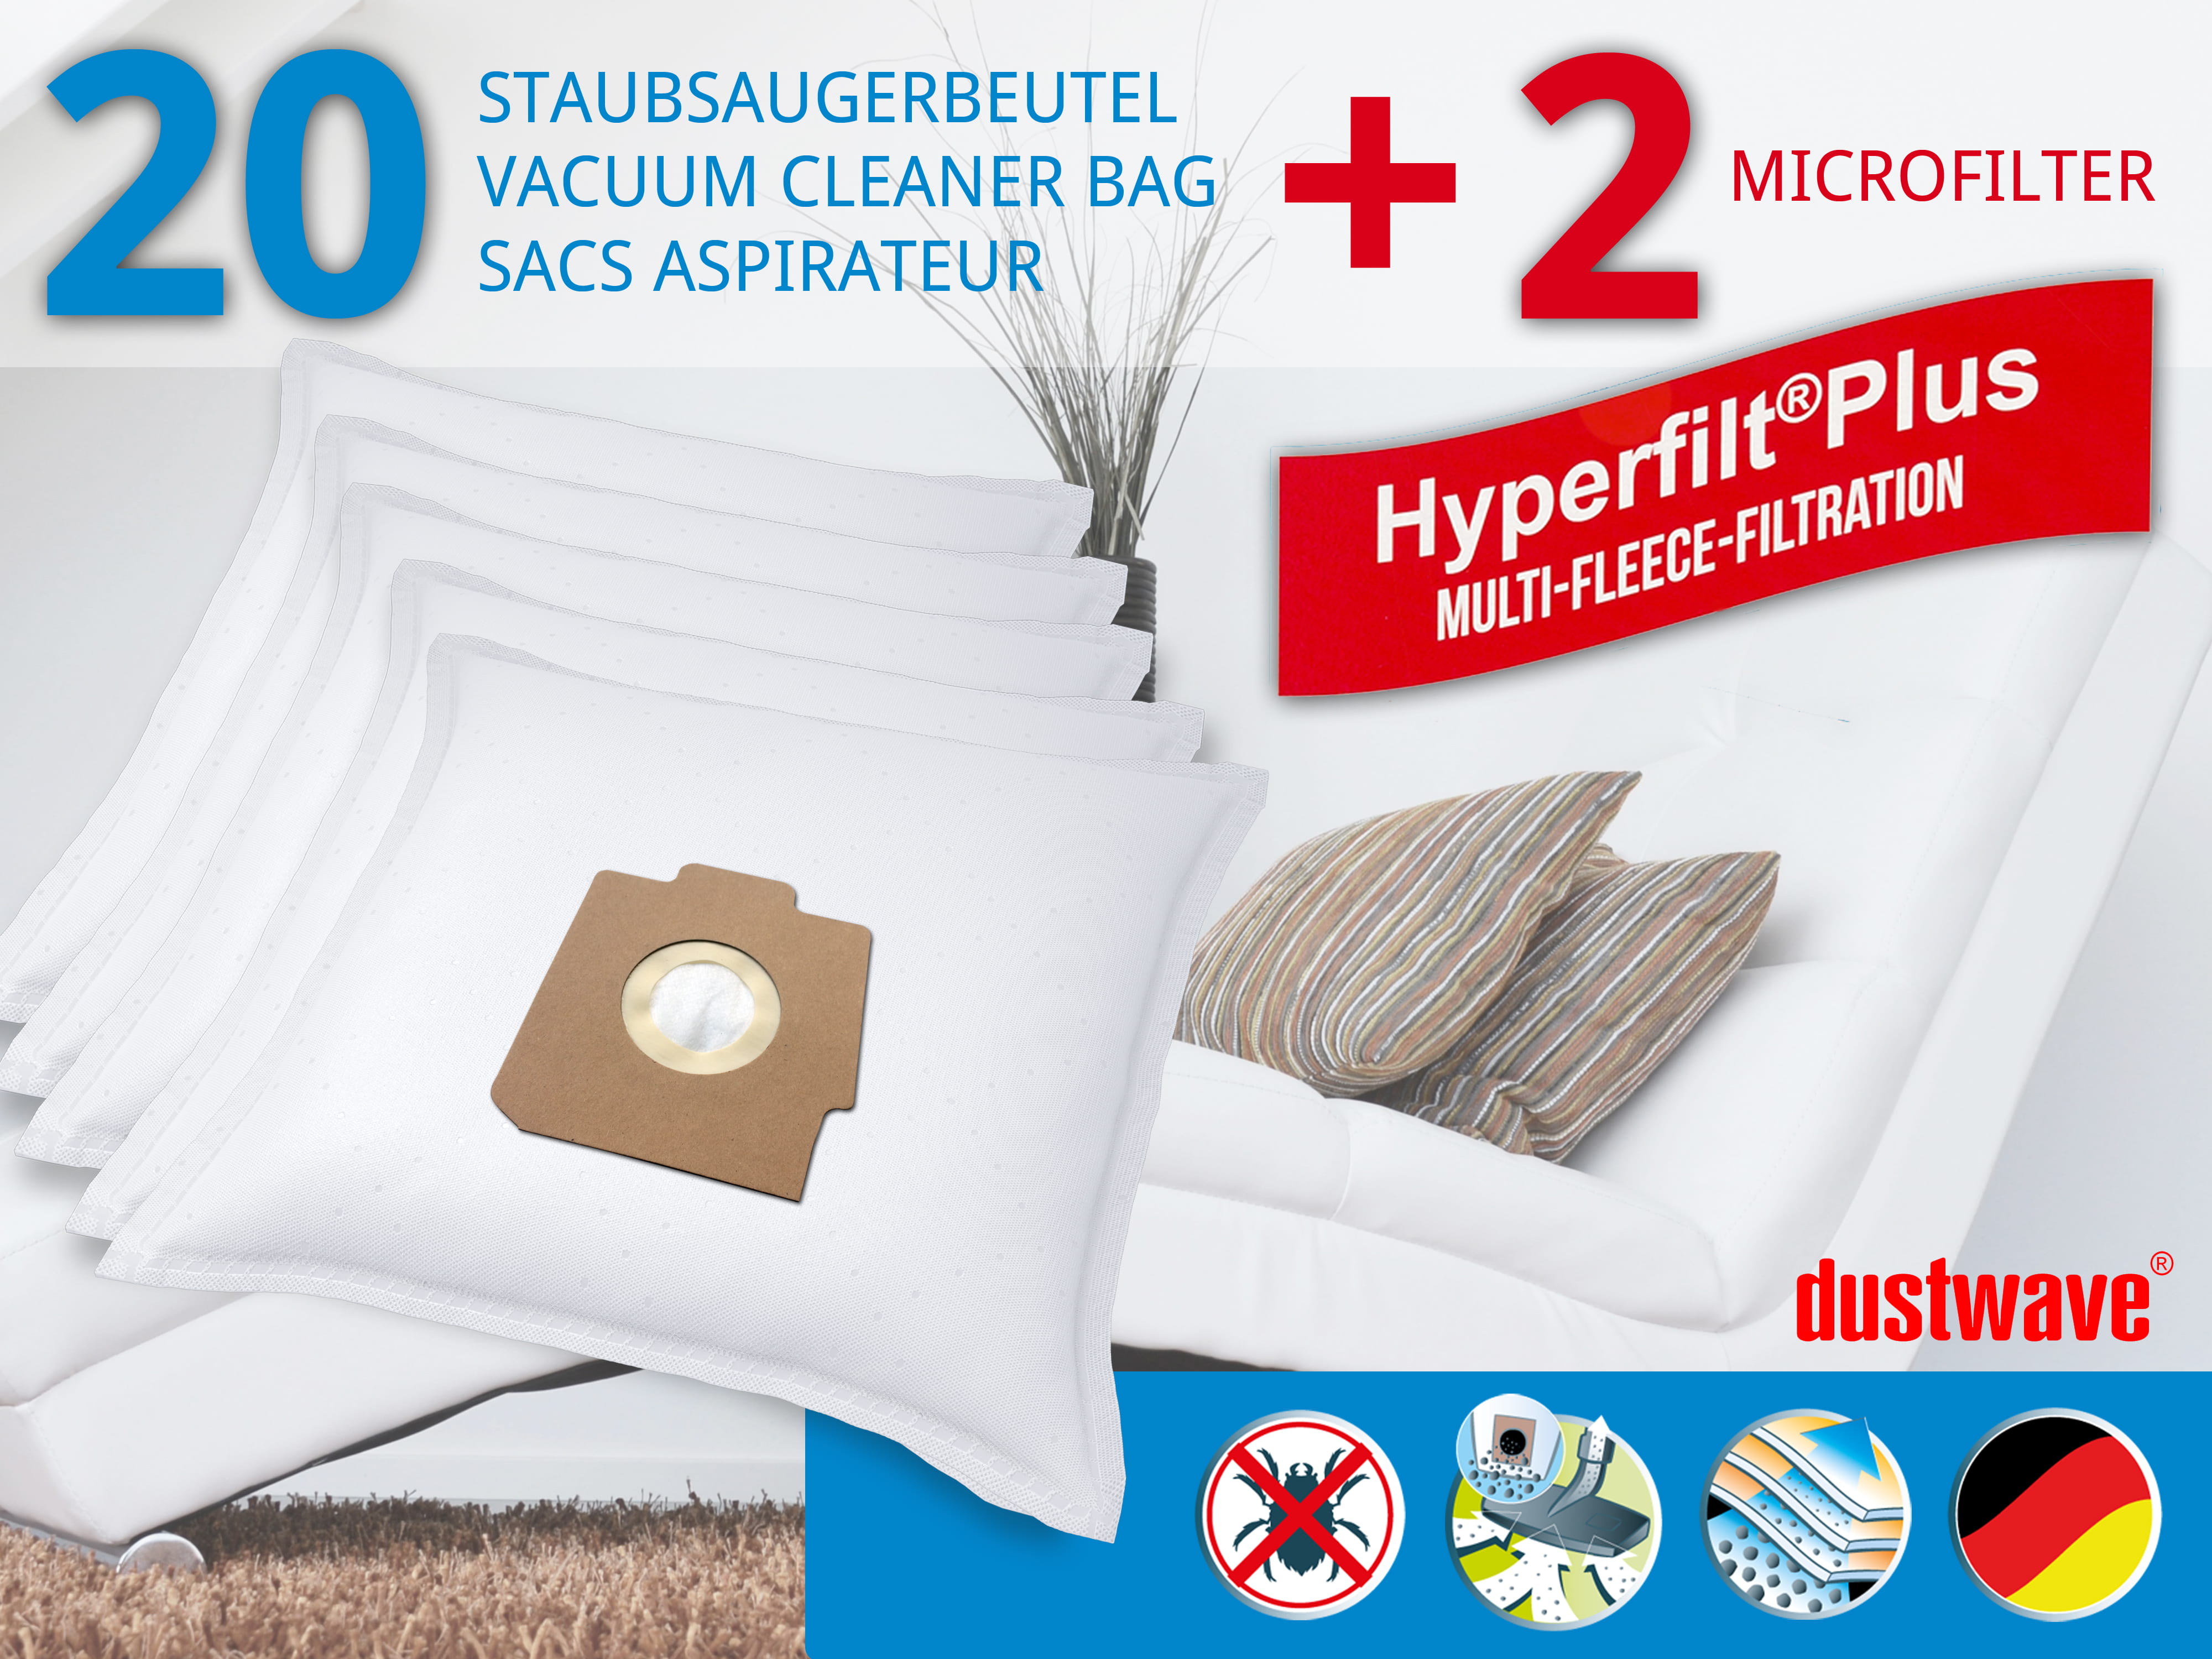 Dustwave® 20 Staubsaugerbeutel für Hoover S3722051 / TRS3722051 - hocheffizient, mehrlagiges Mikrovlies mit Hygieneverschluss - Made in Germany